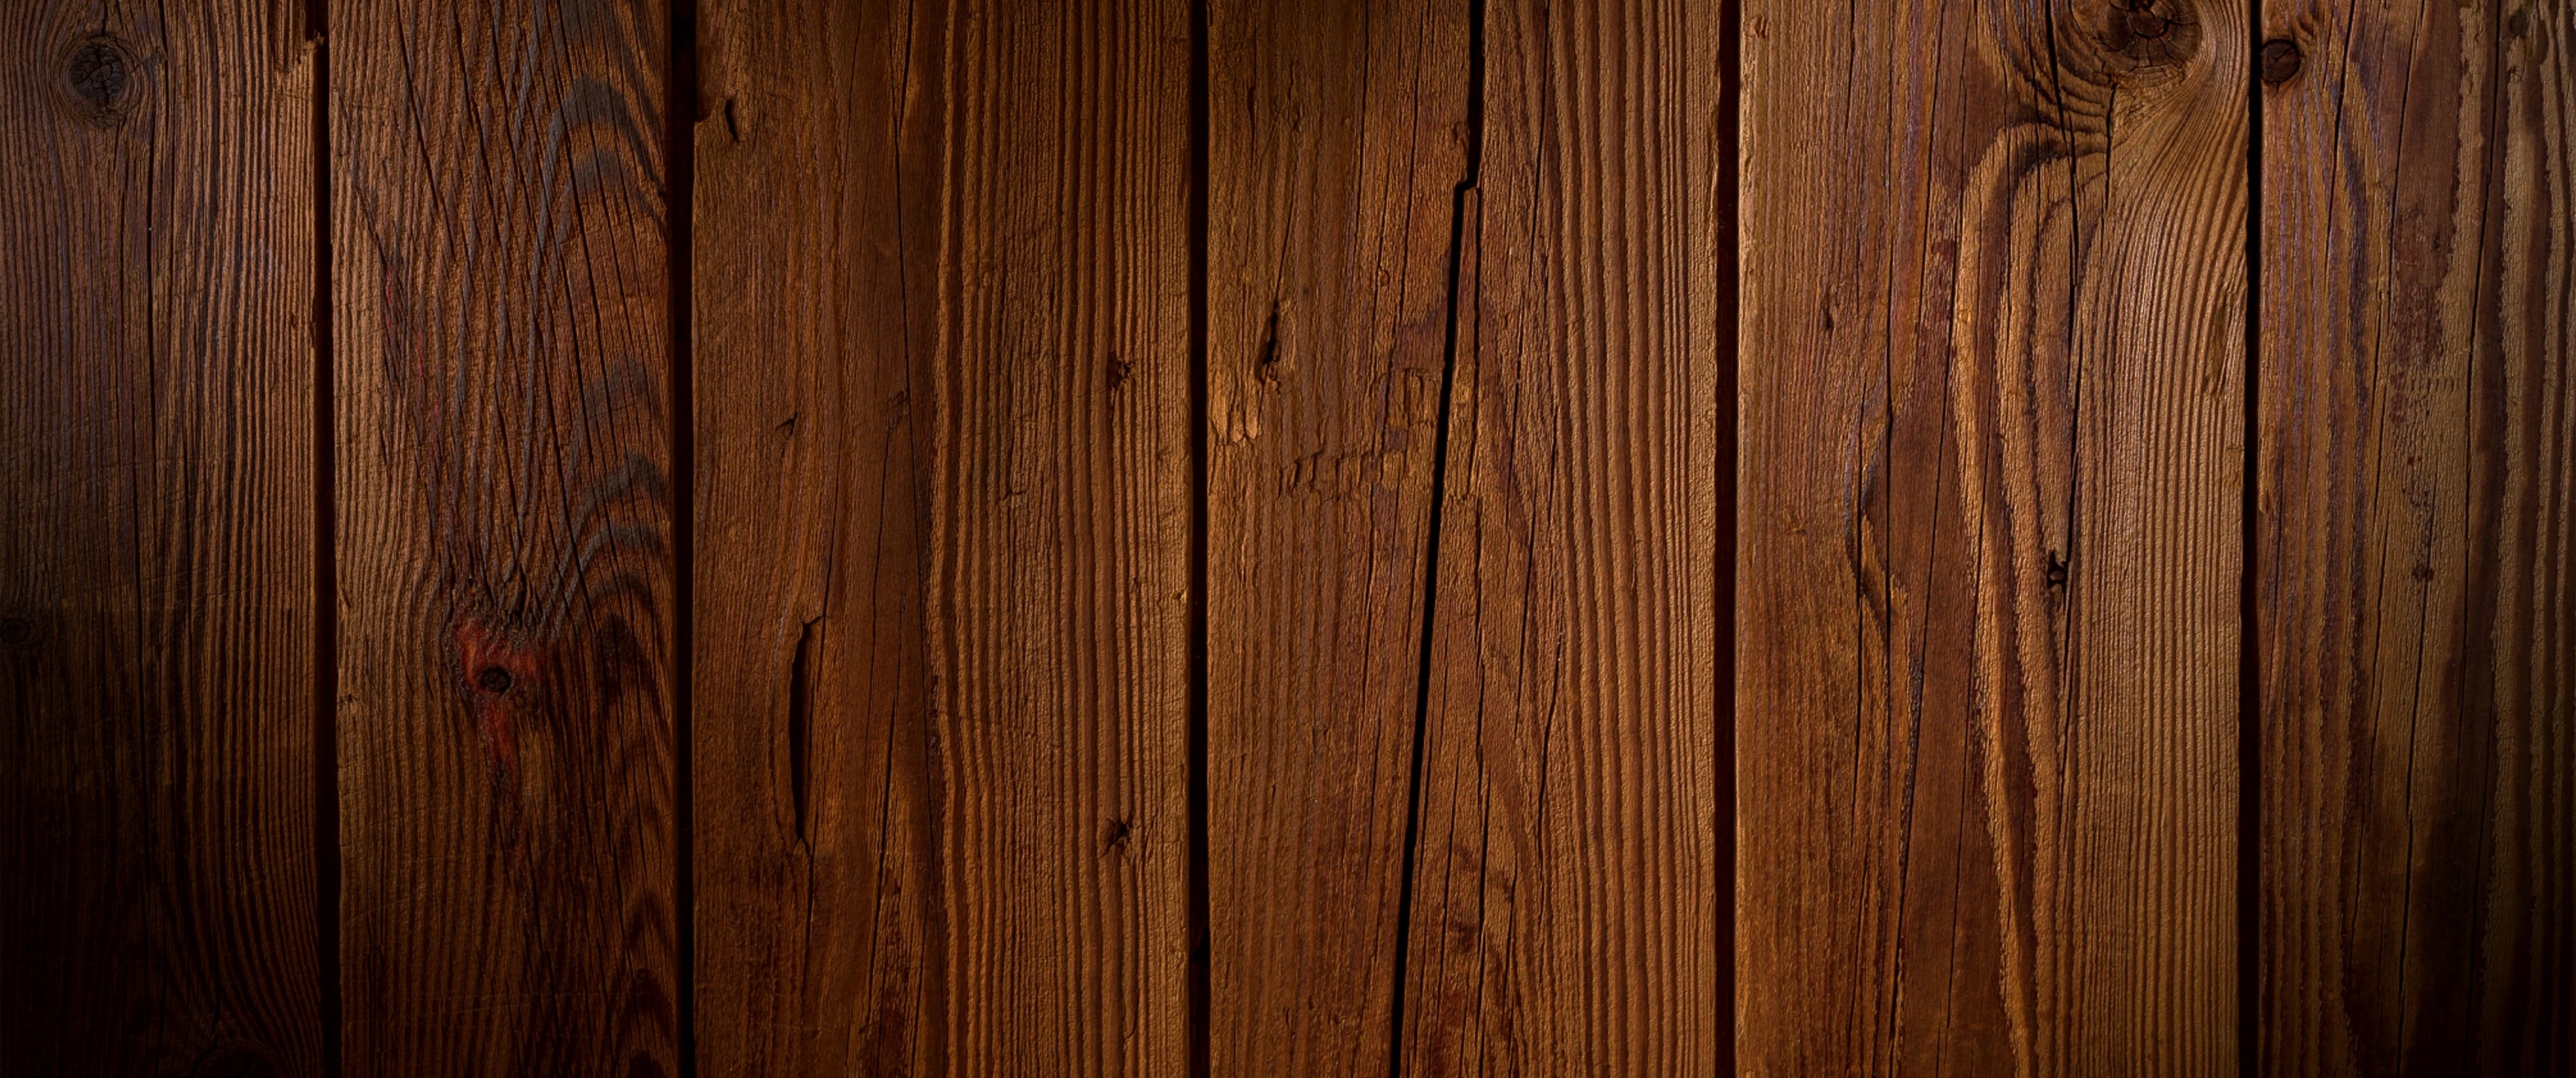 Hình nền giấy dán tường gỗ sẽ mang đến một cái nhìn hoàn hảo cho căn phòng của bạn. Với chất liệu gỗ chất lượng cao, hình nền giấy dán tường gỗ sẽ thêm tính chất tự nhiên và đẳng cấp cho không gian sống. Nó cũng thích hợp cho bất kỳ phong cách trang trí nào, từ cổ điển đến hiện đại.